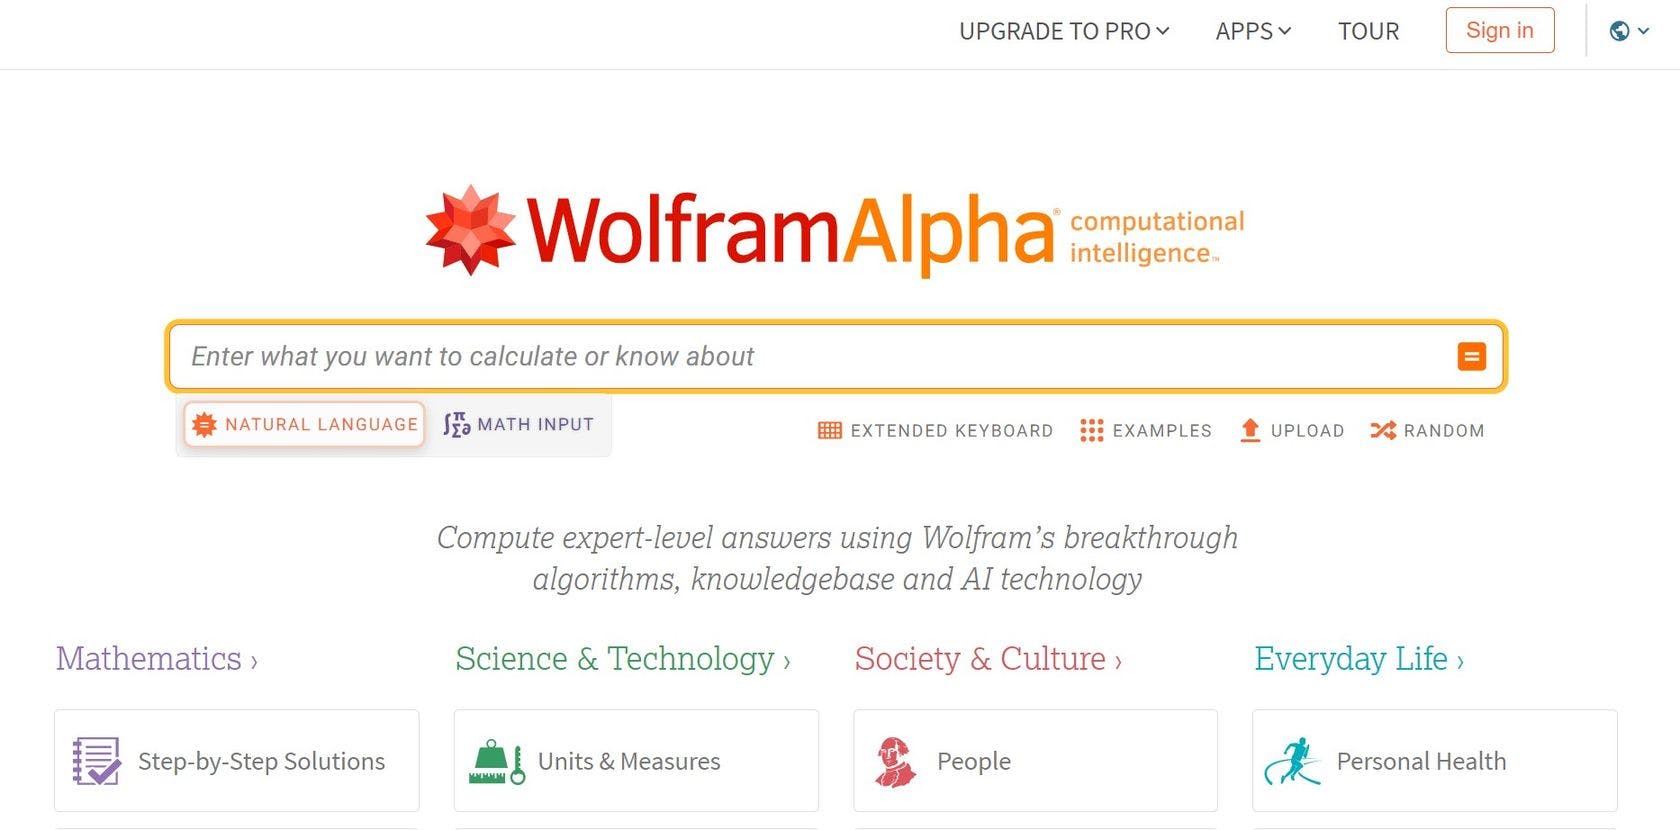 使用 Wolfram 的突破性算法、知识库和 AI 技术计算专家级答案。面向数学，科学和技术，社会与文化和日常生活等科目。